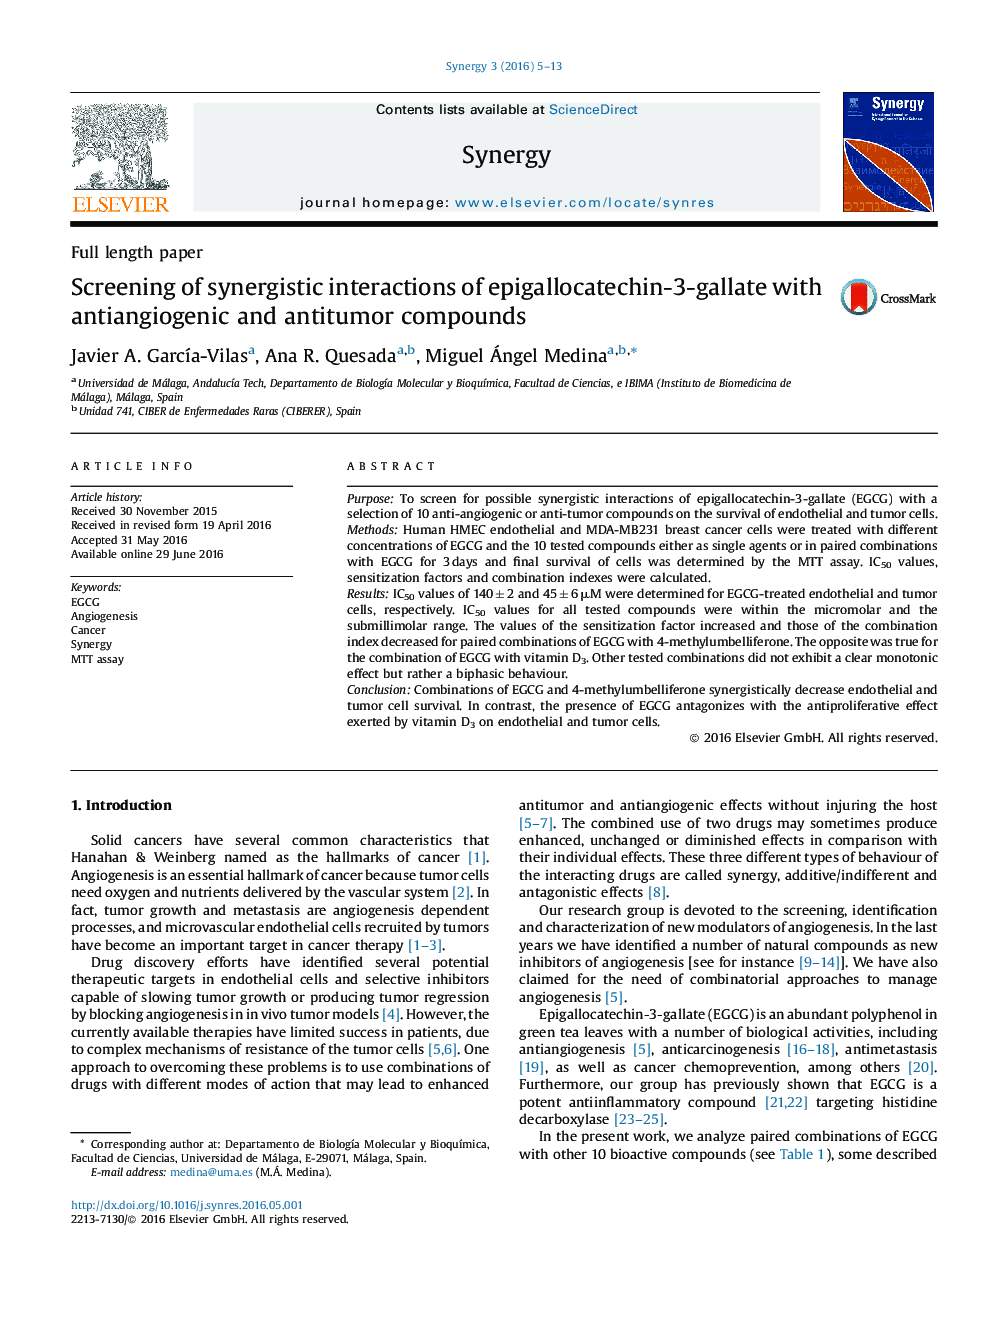 غربالگری اثر متقابل سینرژیک اپیگلاکاتچین 3-گالات با ترکیبات آنتی بائوزگی و ضد تومور 